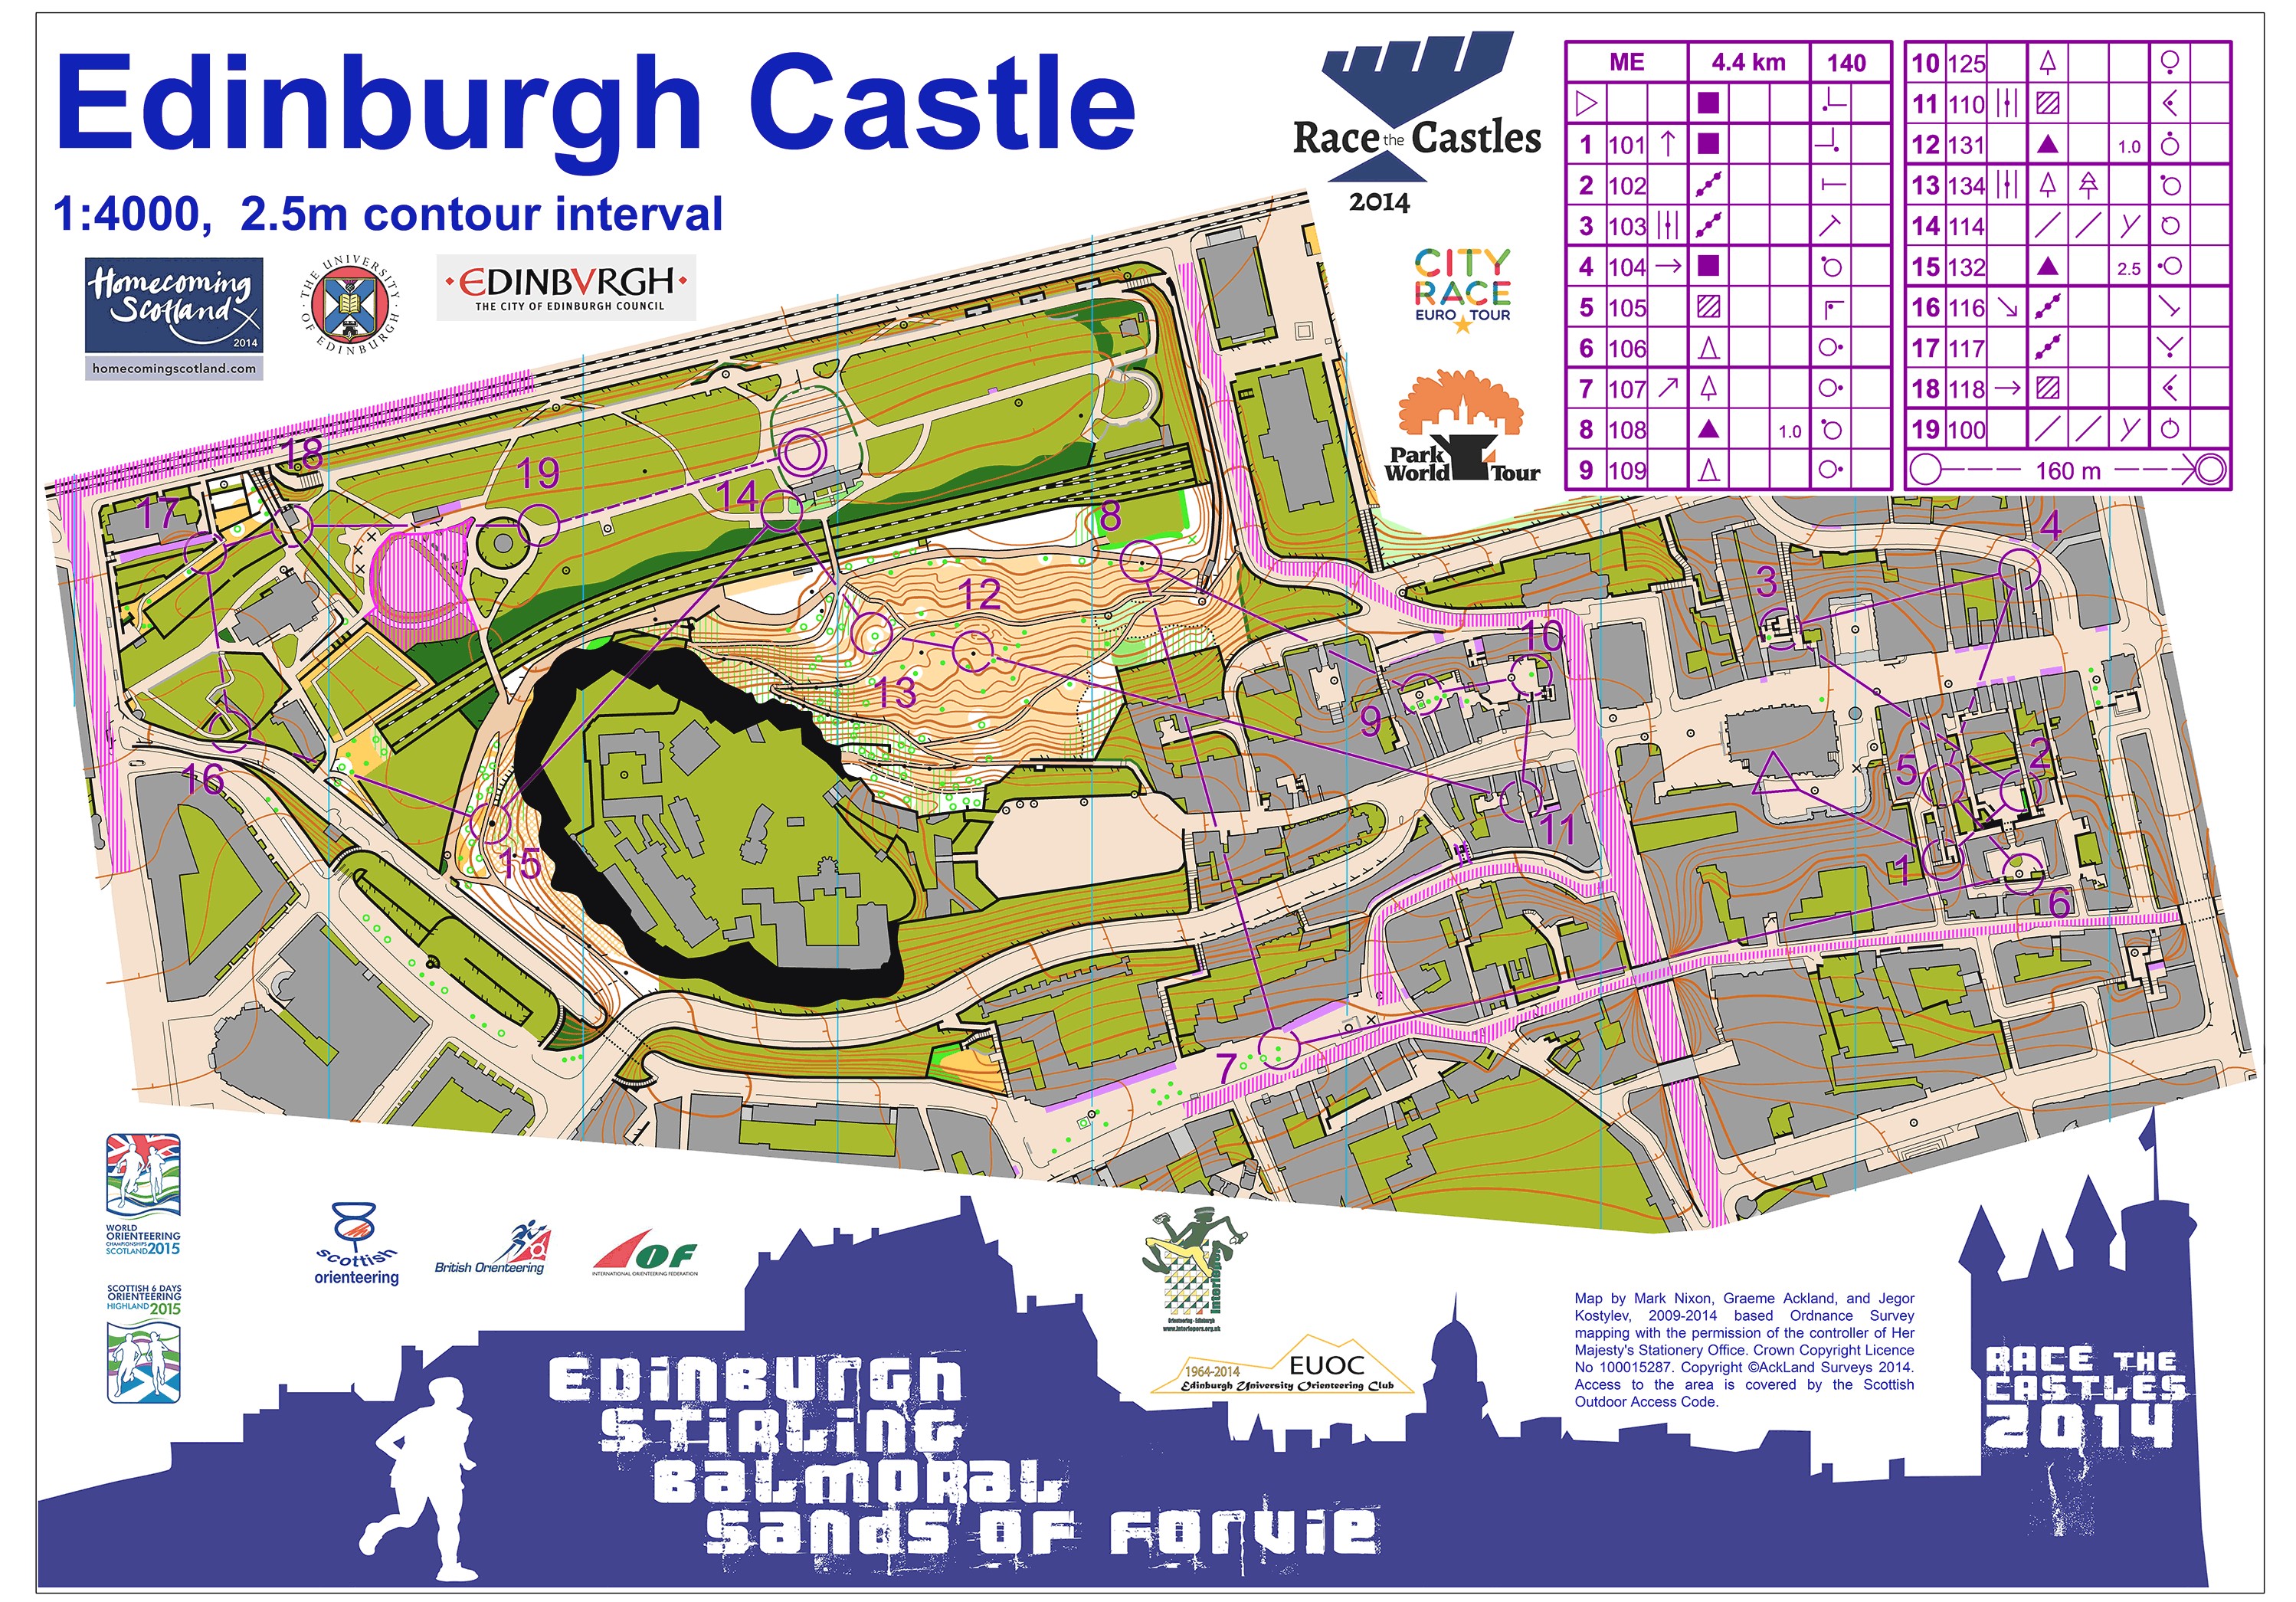 Race the castles1 (11-10-2014)